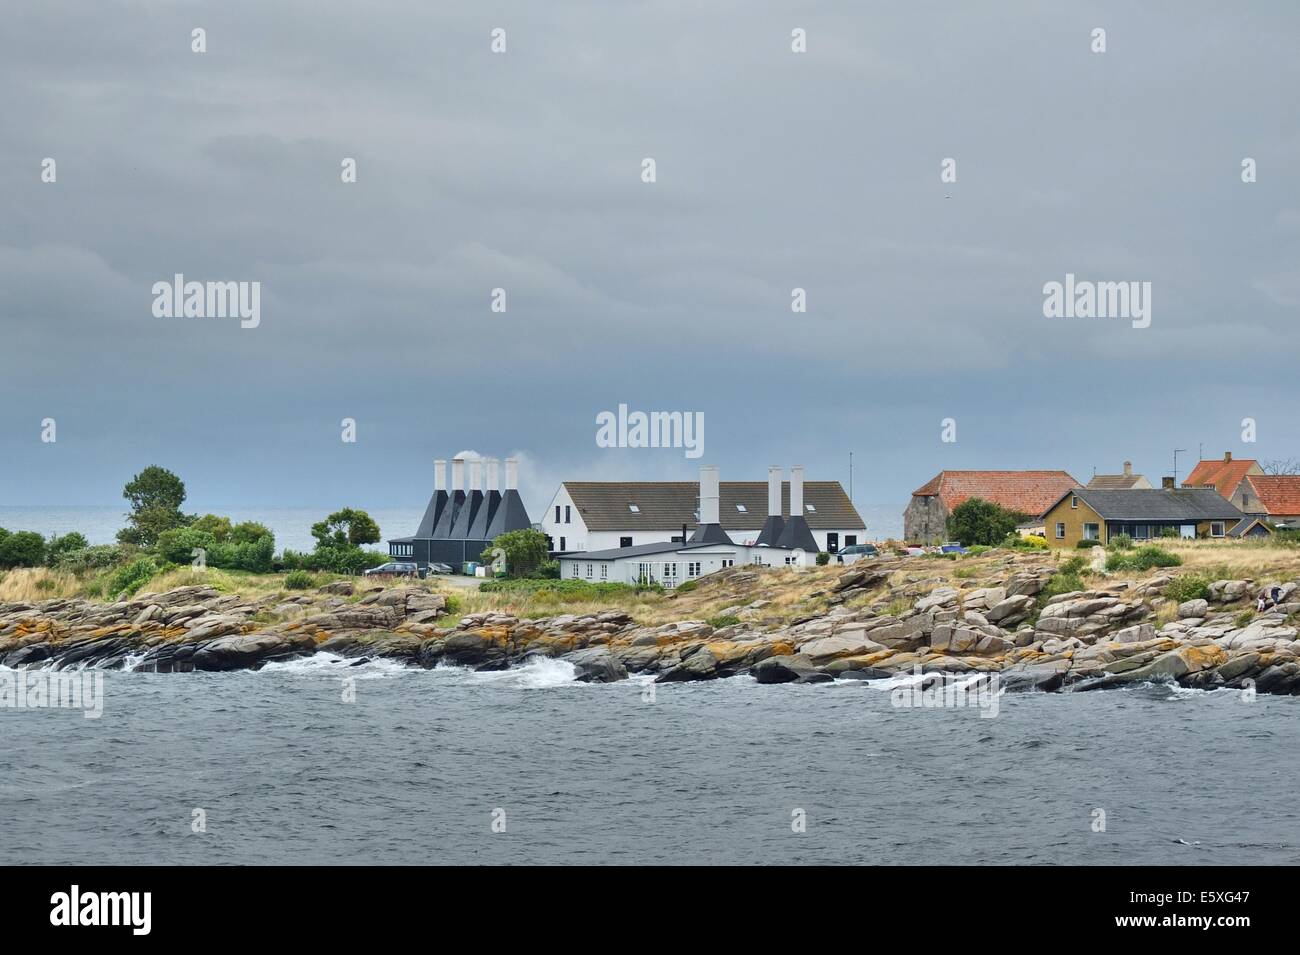 Dinamarca, la isla de Bornholm fotografías tomadas entre el 1 y el 5 de agosto de 2014. Foto: Arenque smokehouse en la ciudad Svaneke Foto de stock